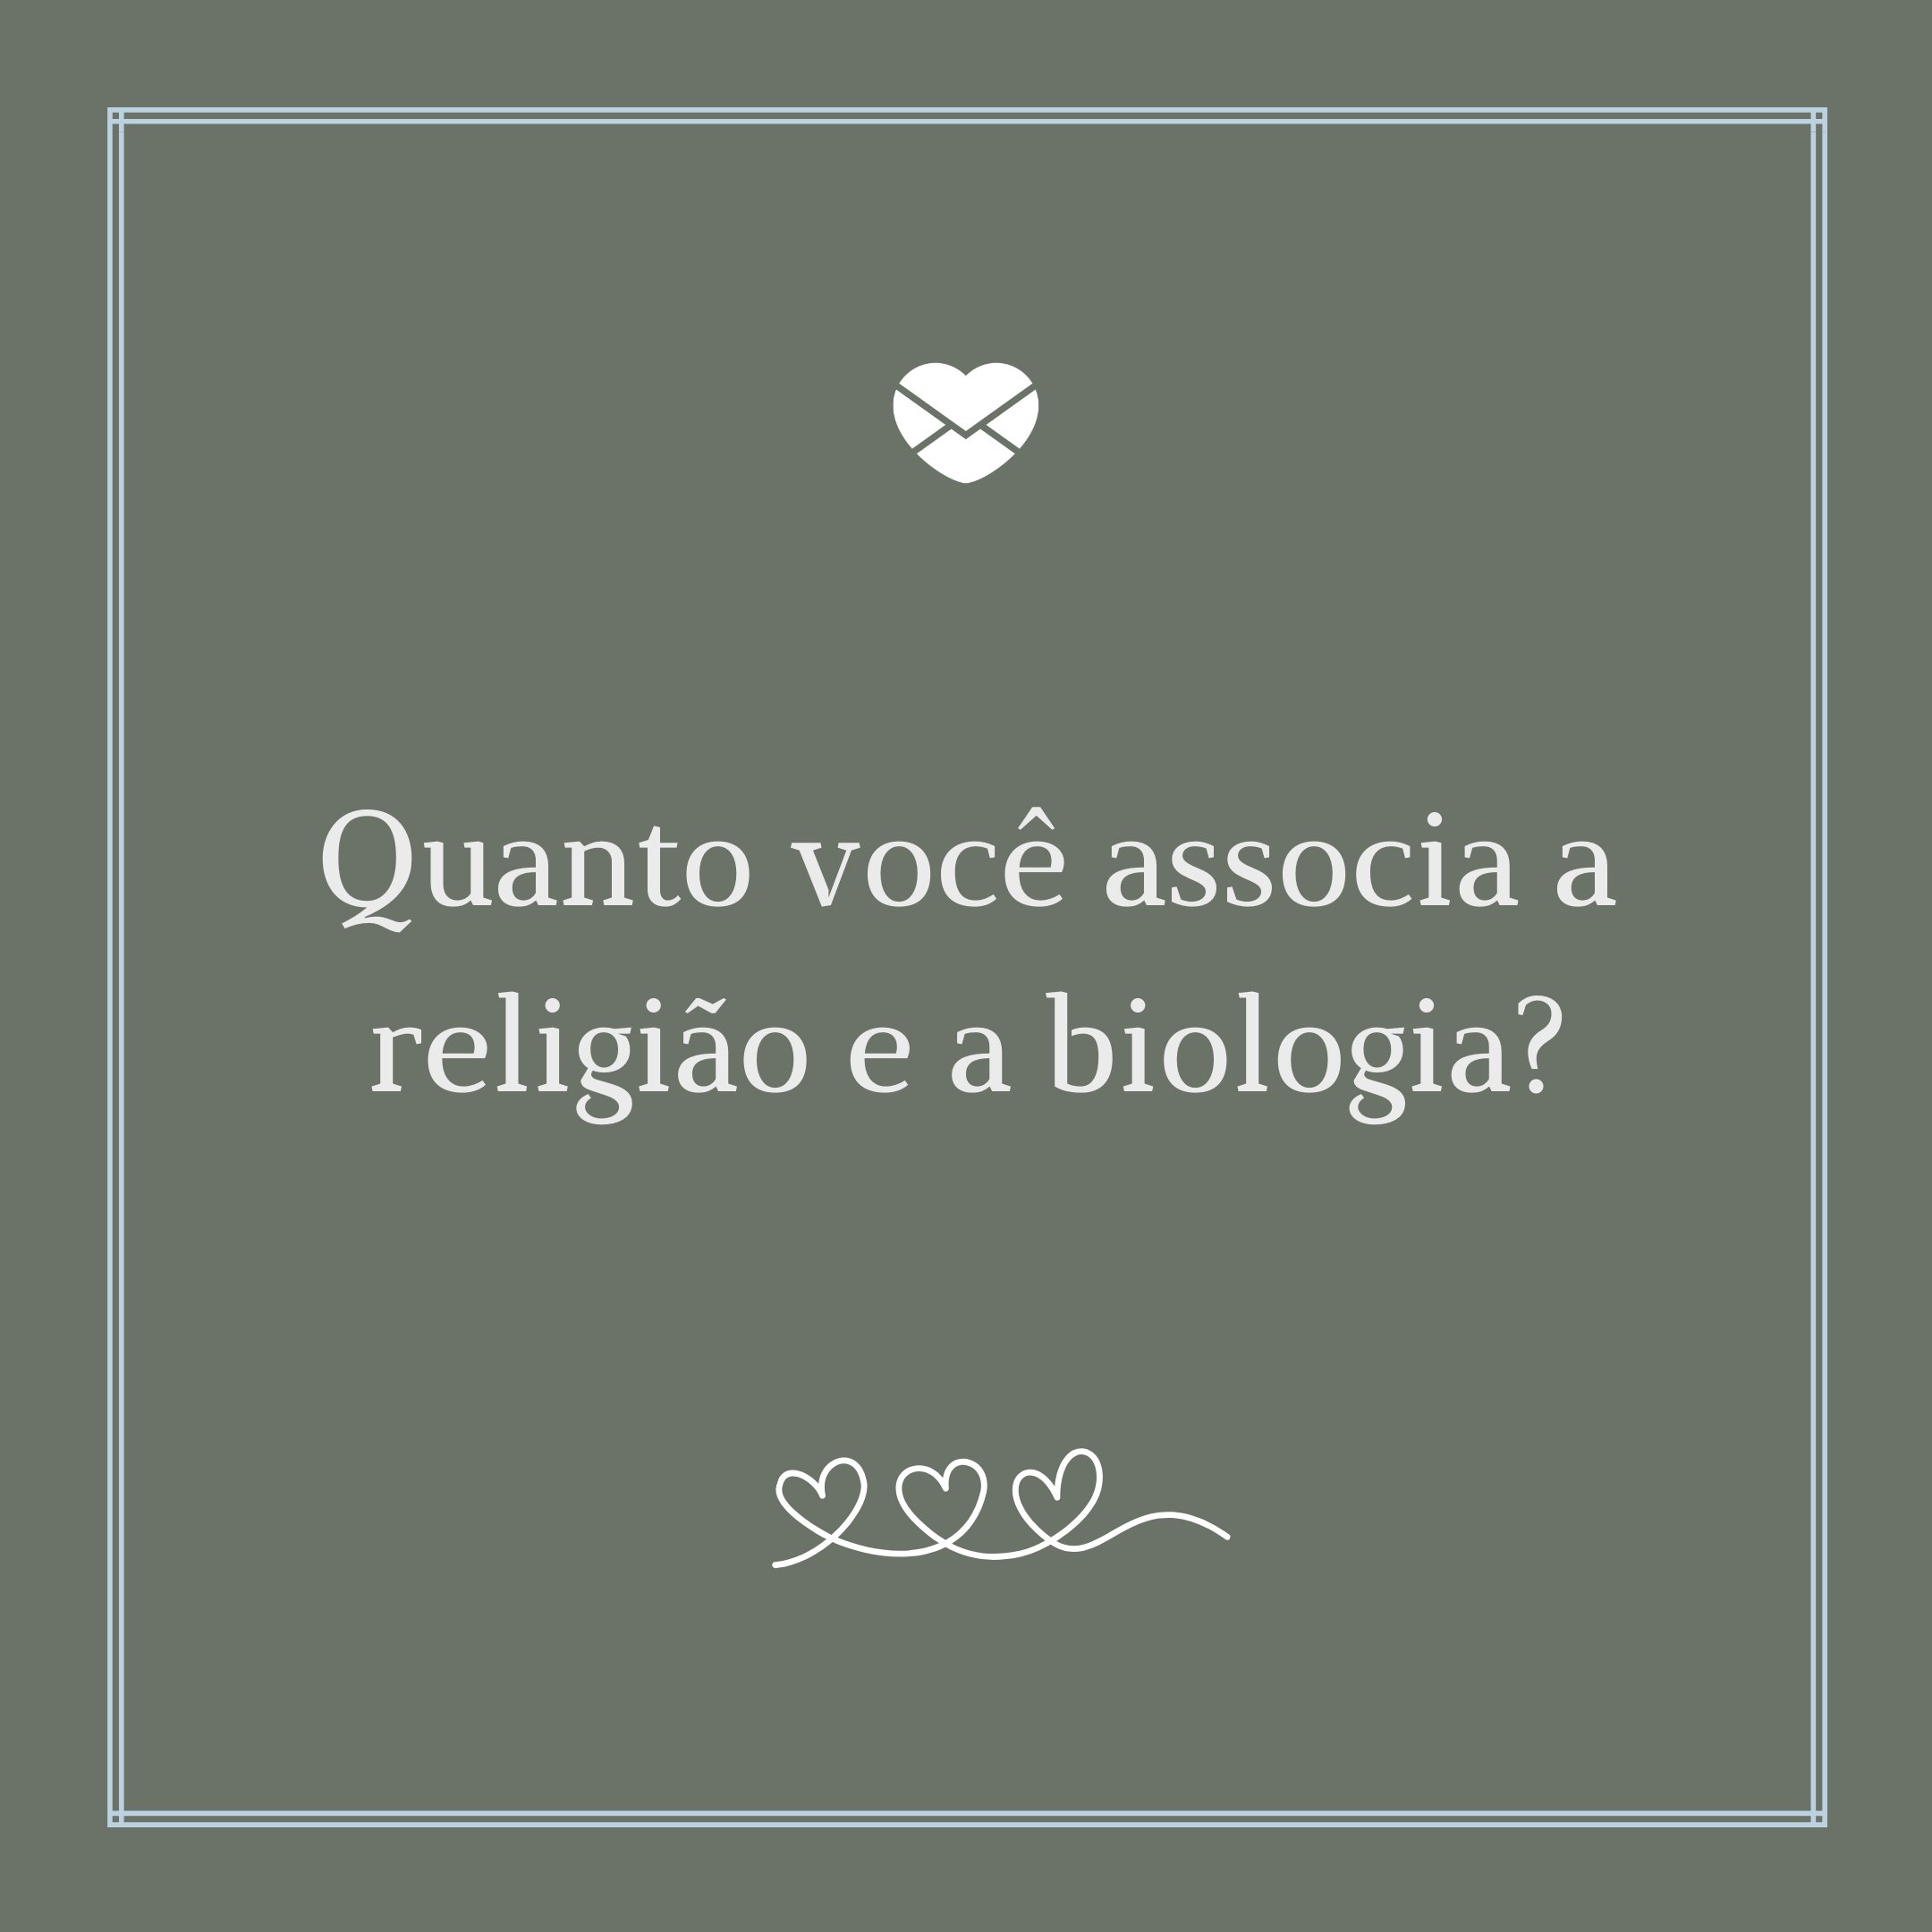 'Quanto você associa a religião e a biologia?' - Grandes ensinamentos dos livros religiosos